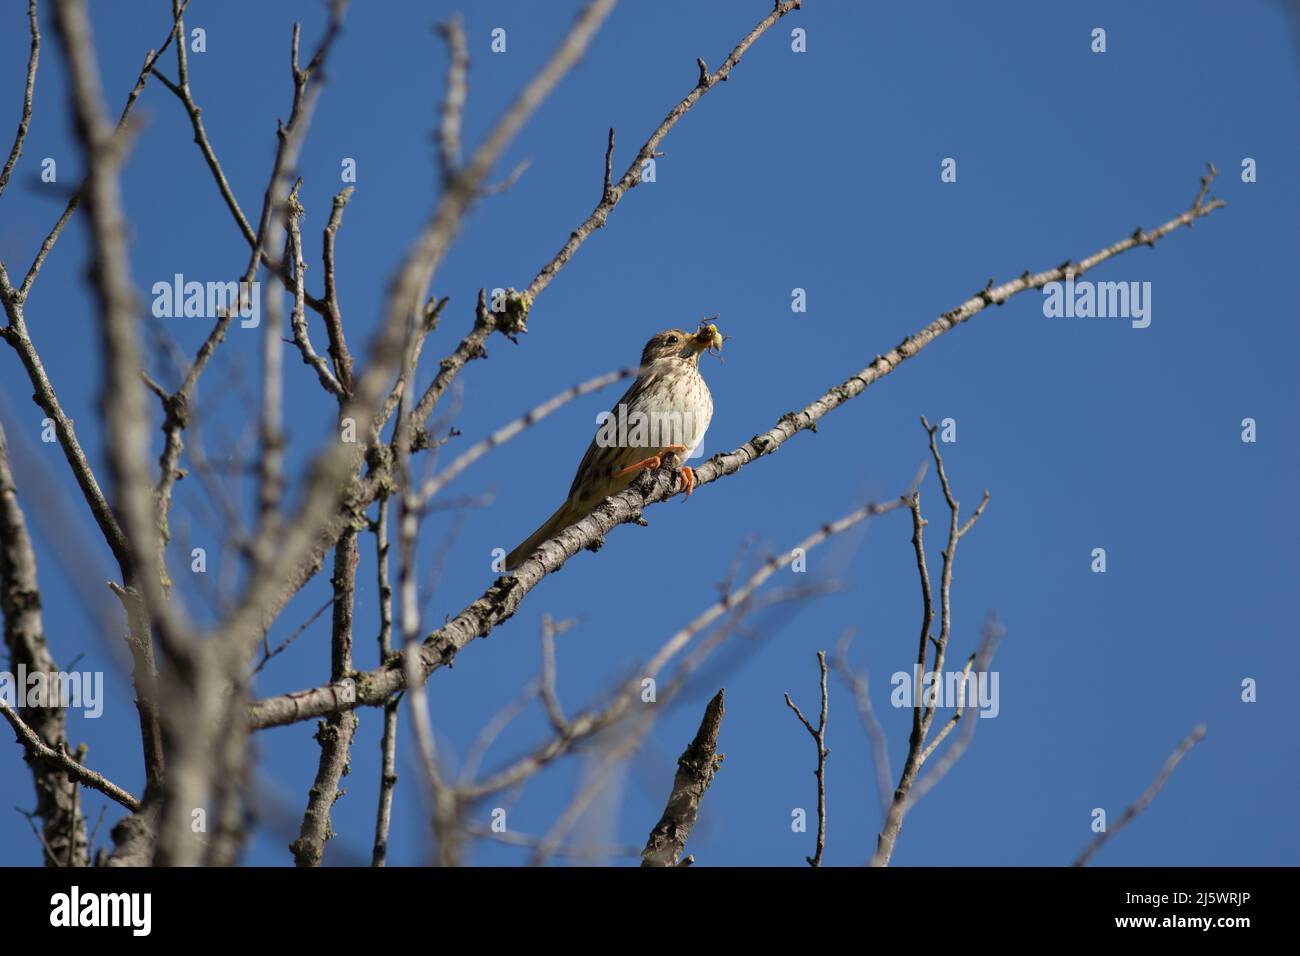 un oiseau avec un insecte dans le bec sur un arbre Stock Photo